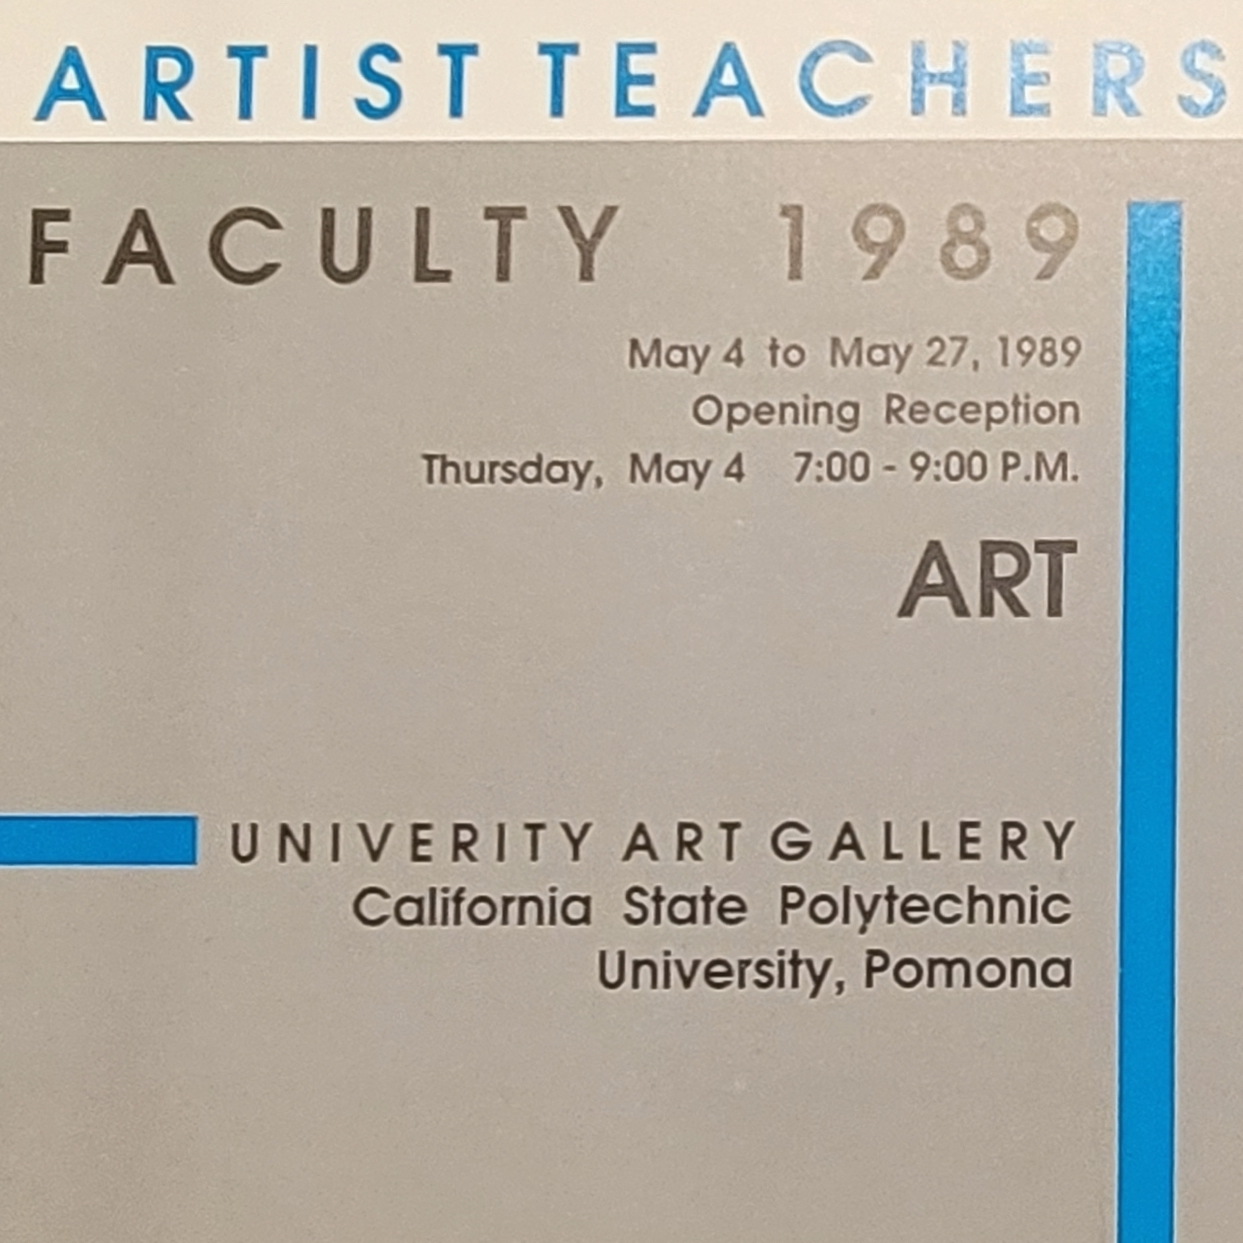 Artist Teachers Faculty 1989